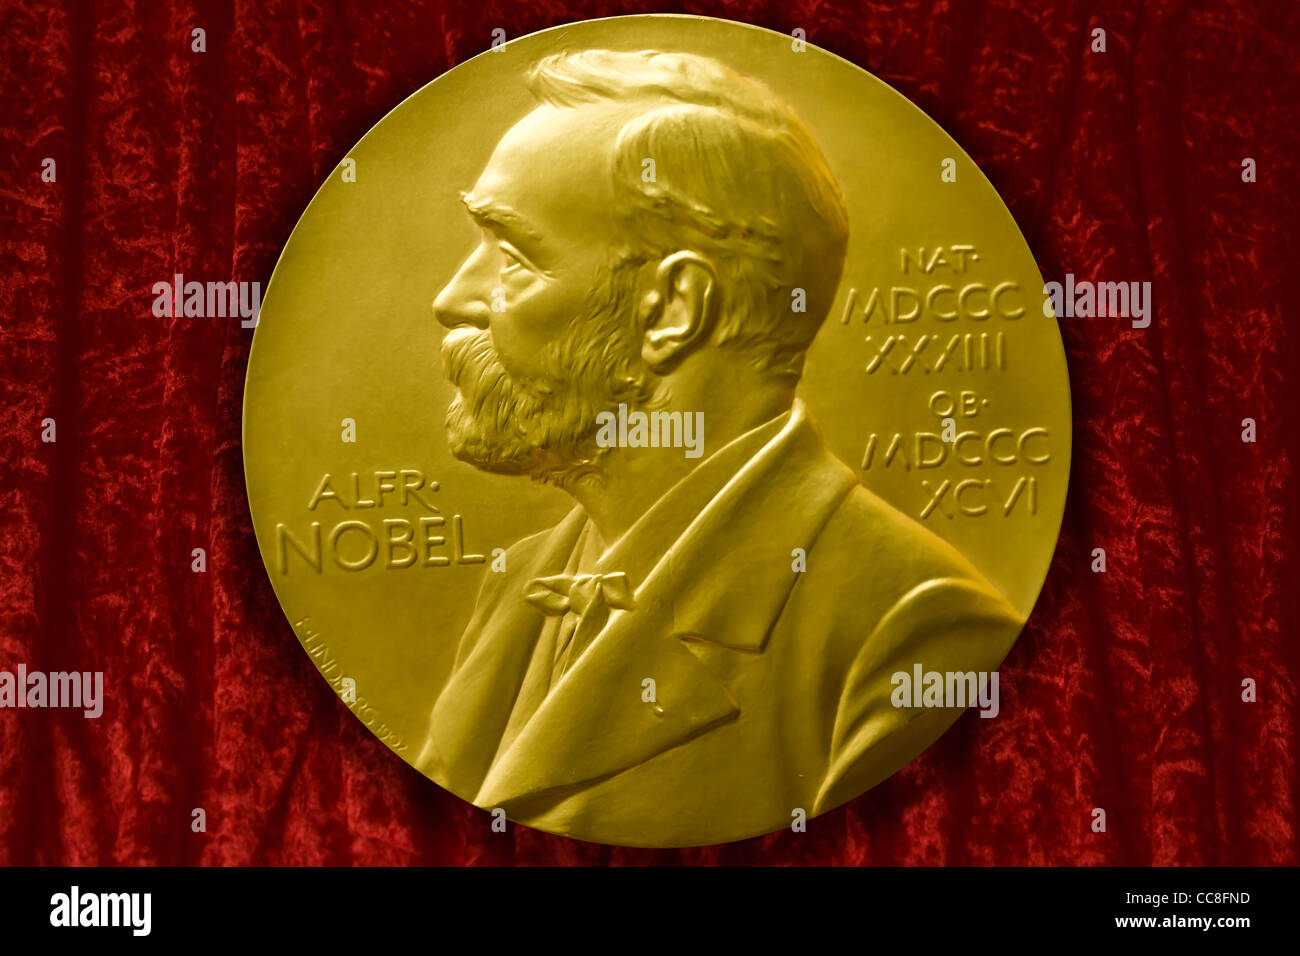 Johannes V. Jensens Nobel Prize winner medal from 1944 Stock Photo